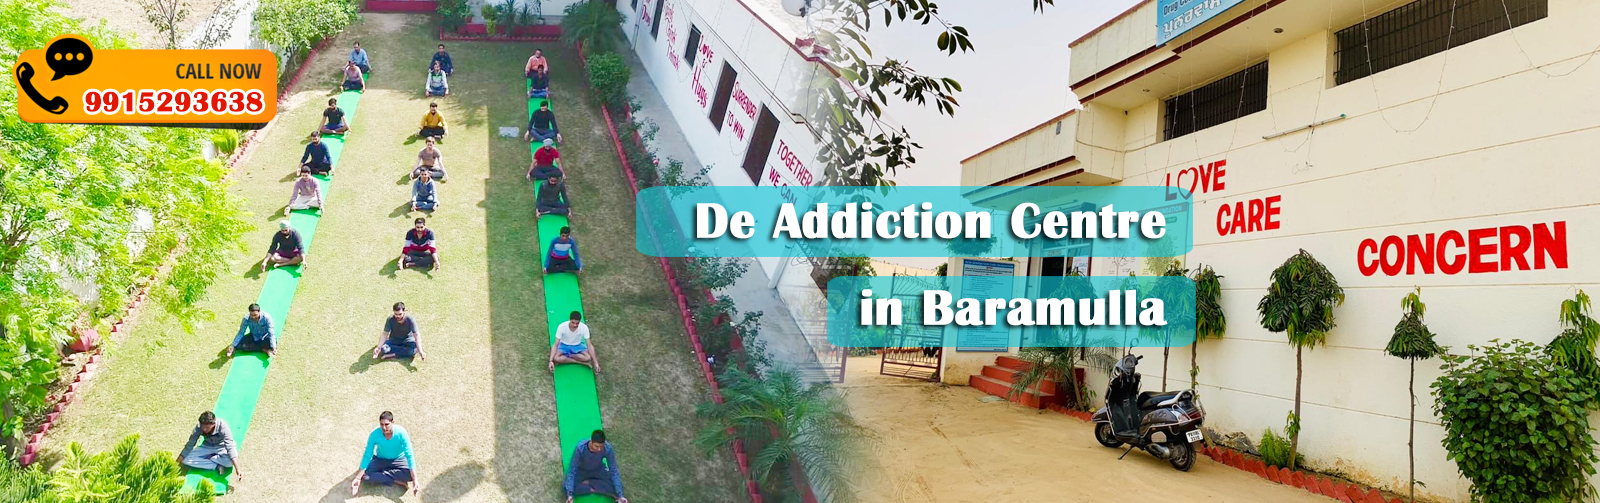 De Addiction Centre in Baramulla